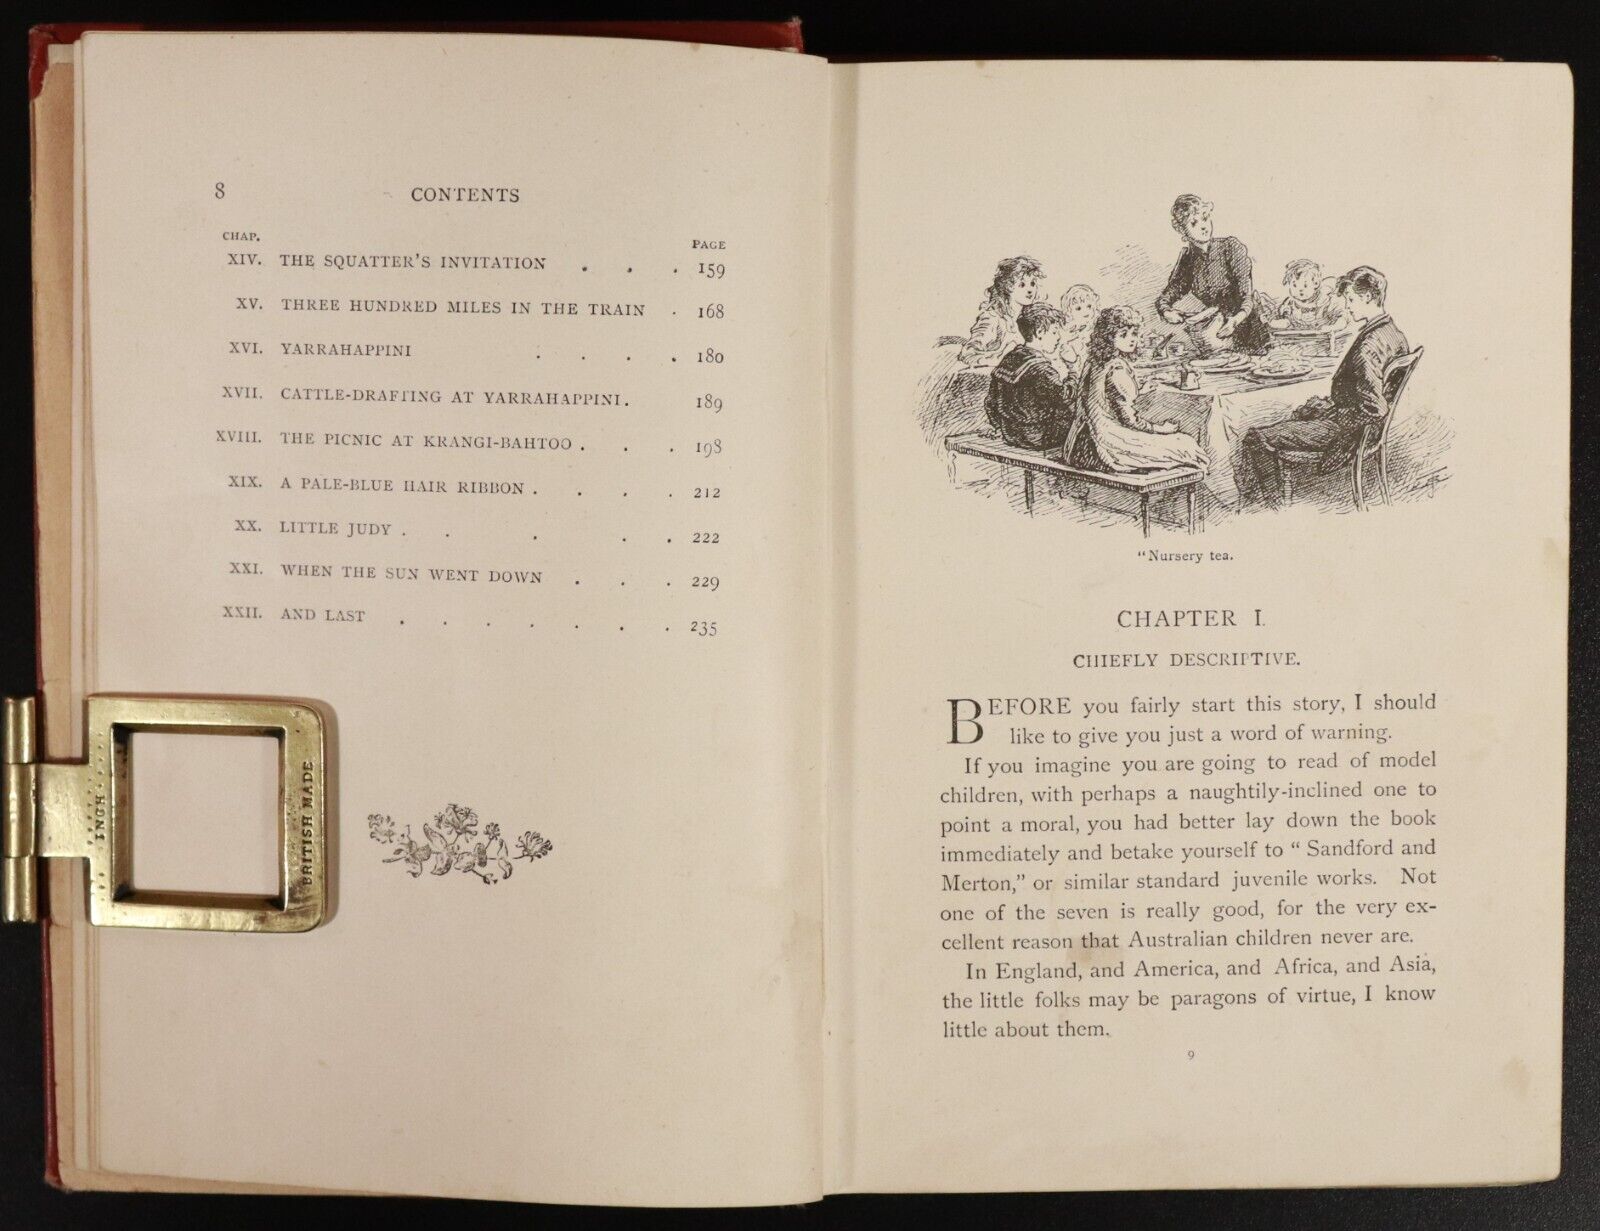 1895 Seven Little Australians by Ethel Turner Antique Australian Fiction Book